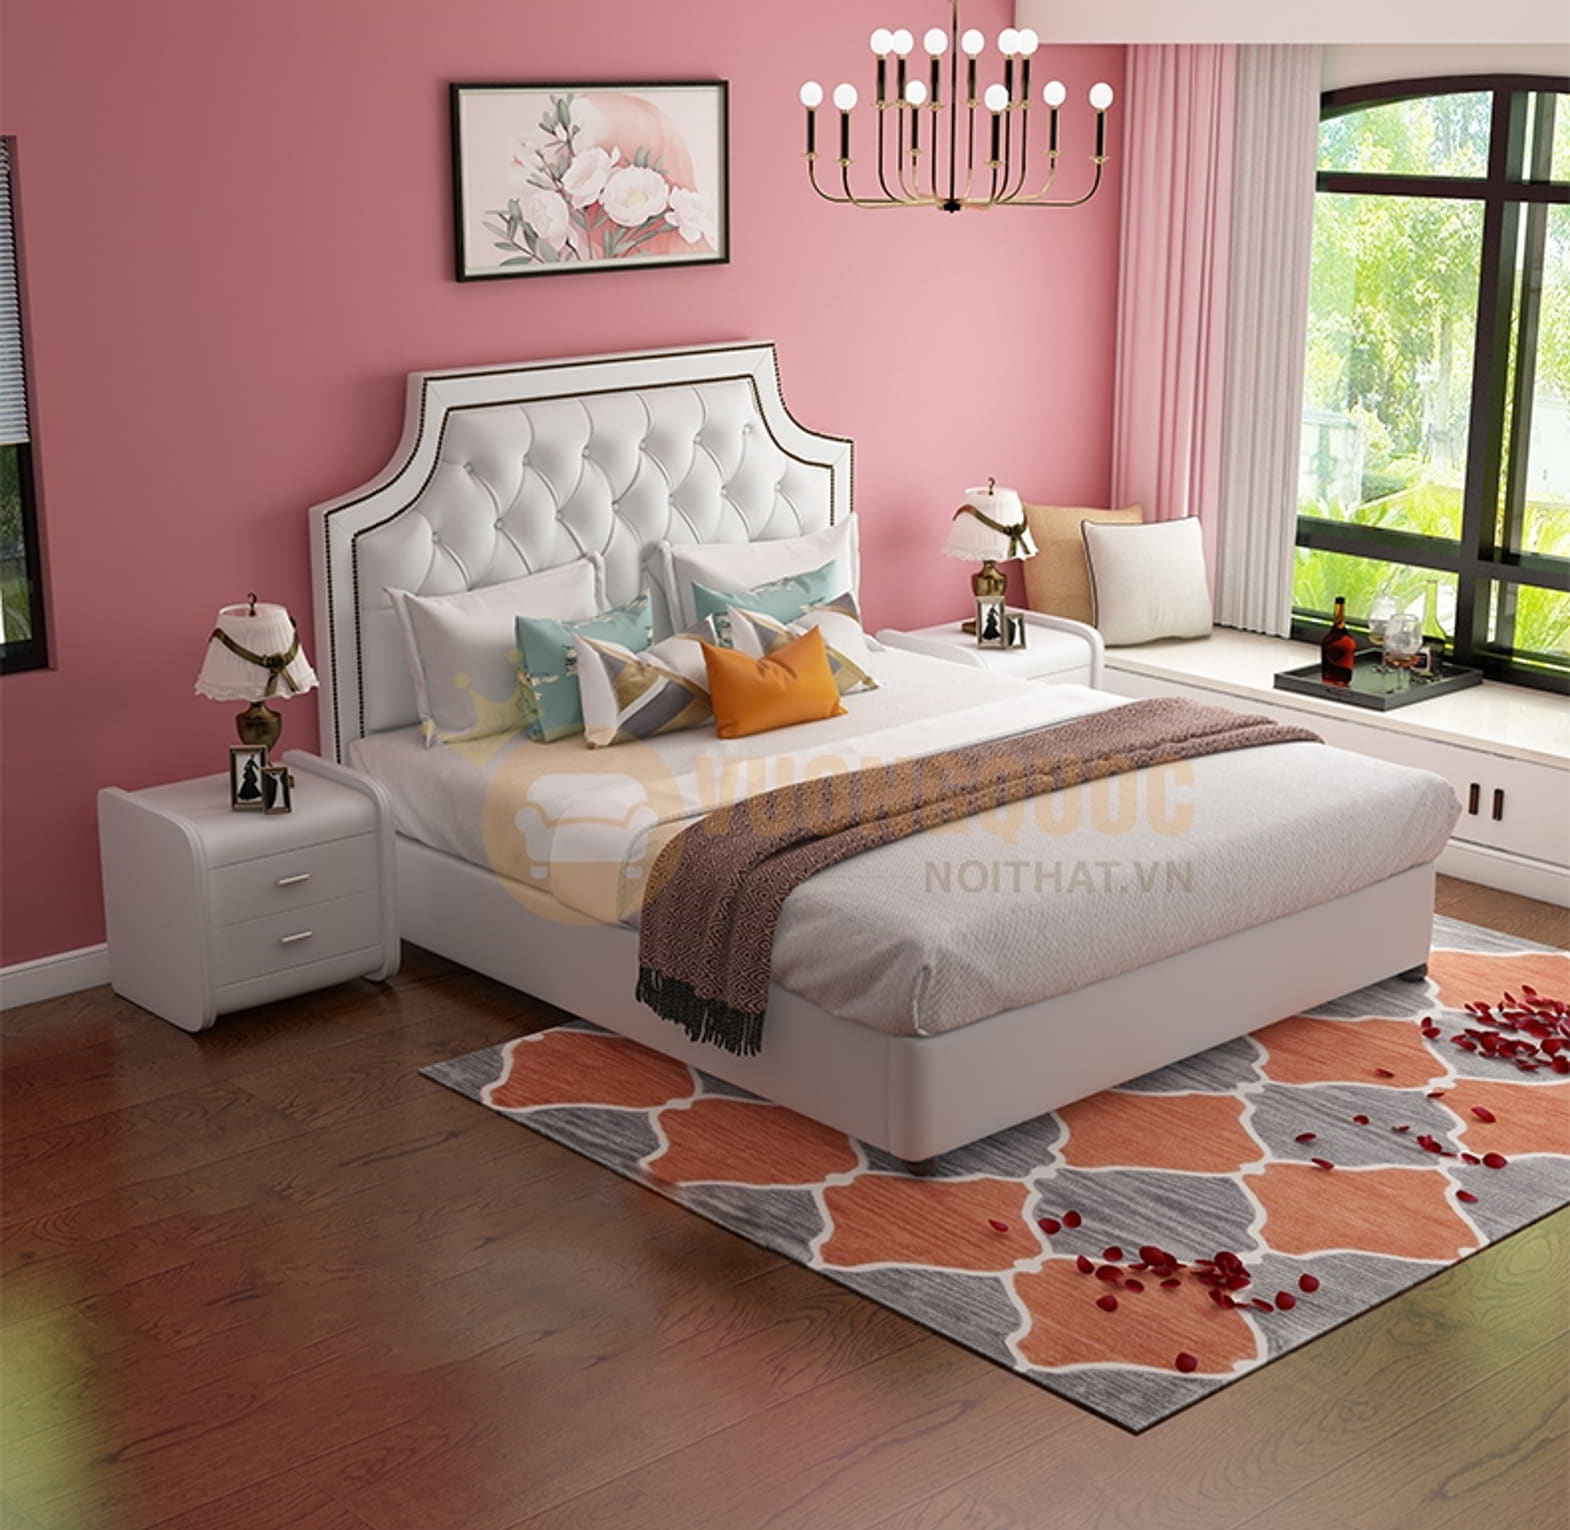 Đồ nội thất cho bé gái với thiết kế đơn giản sử dụng chủ yếu màu hồng 